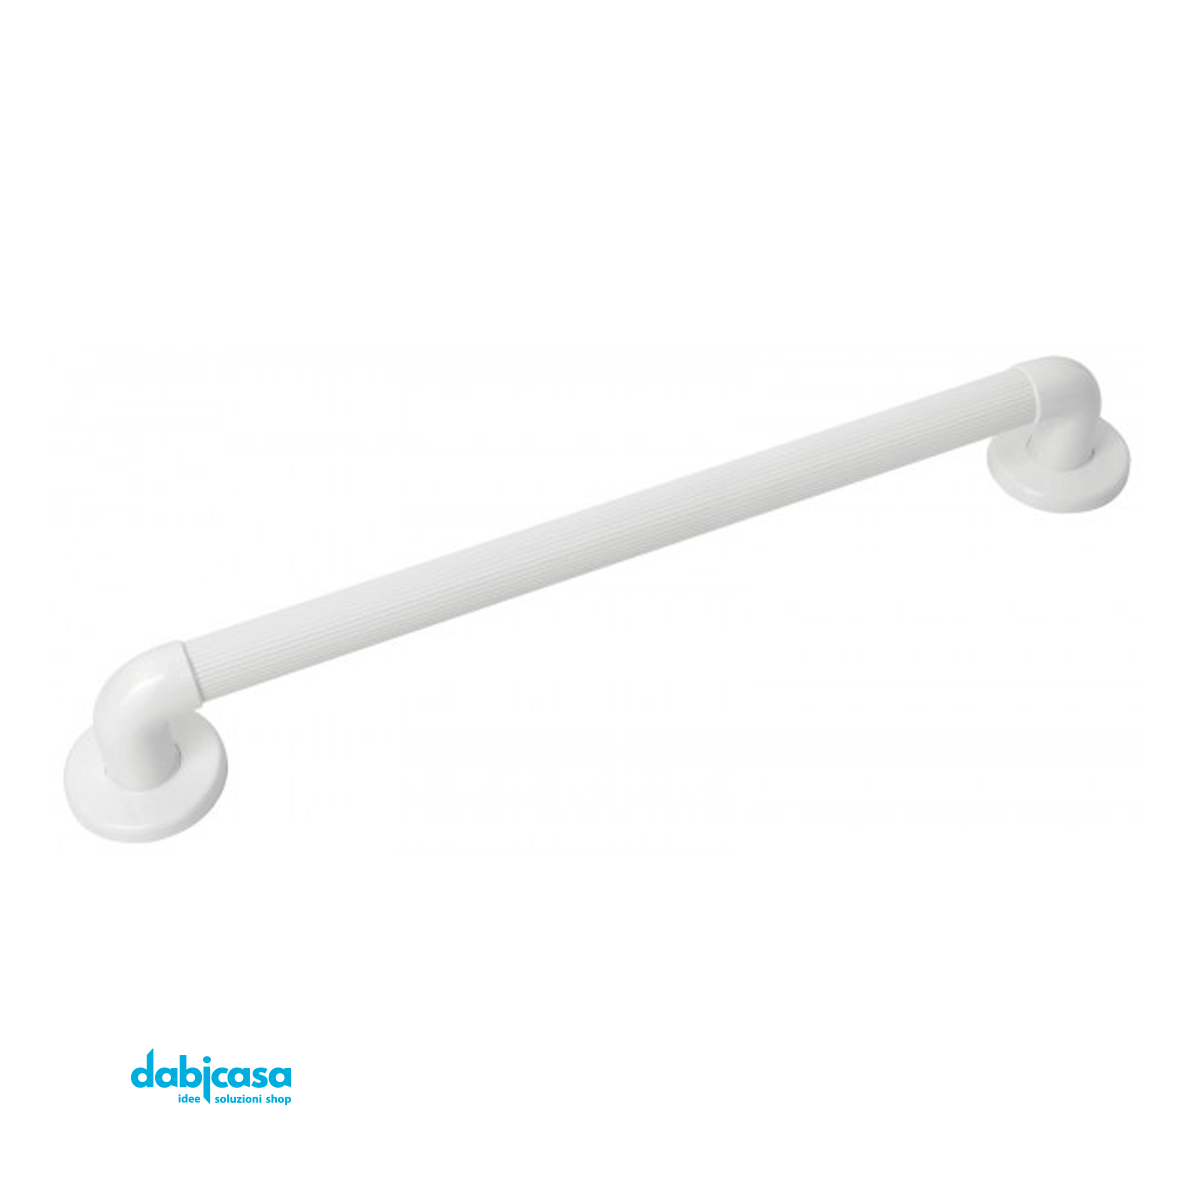 Maniglione "Linea Comfort" in ABS Colore Bianco 70 cm freeshipping - Dabicasa